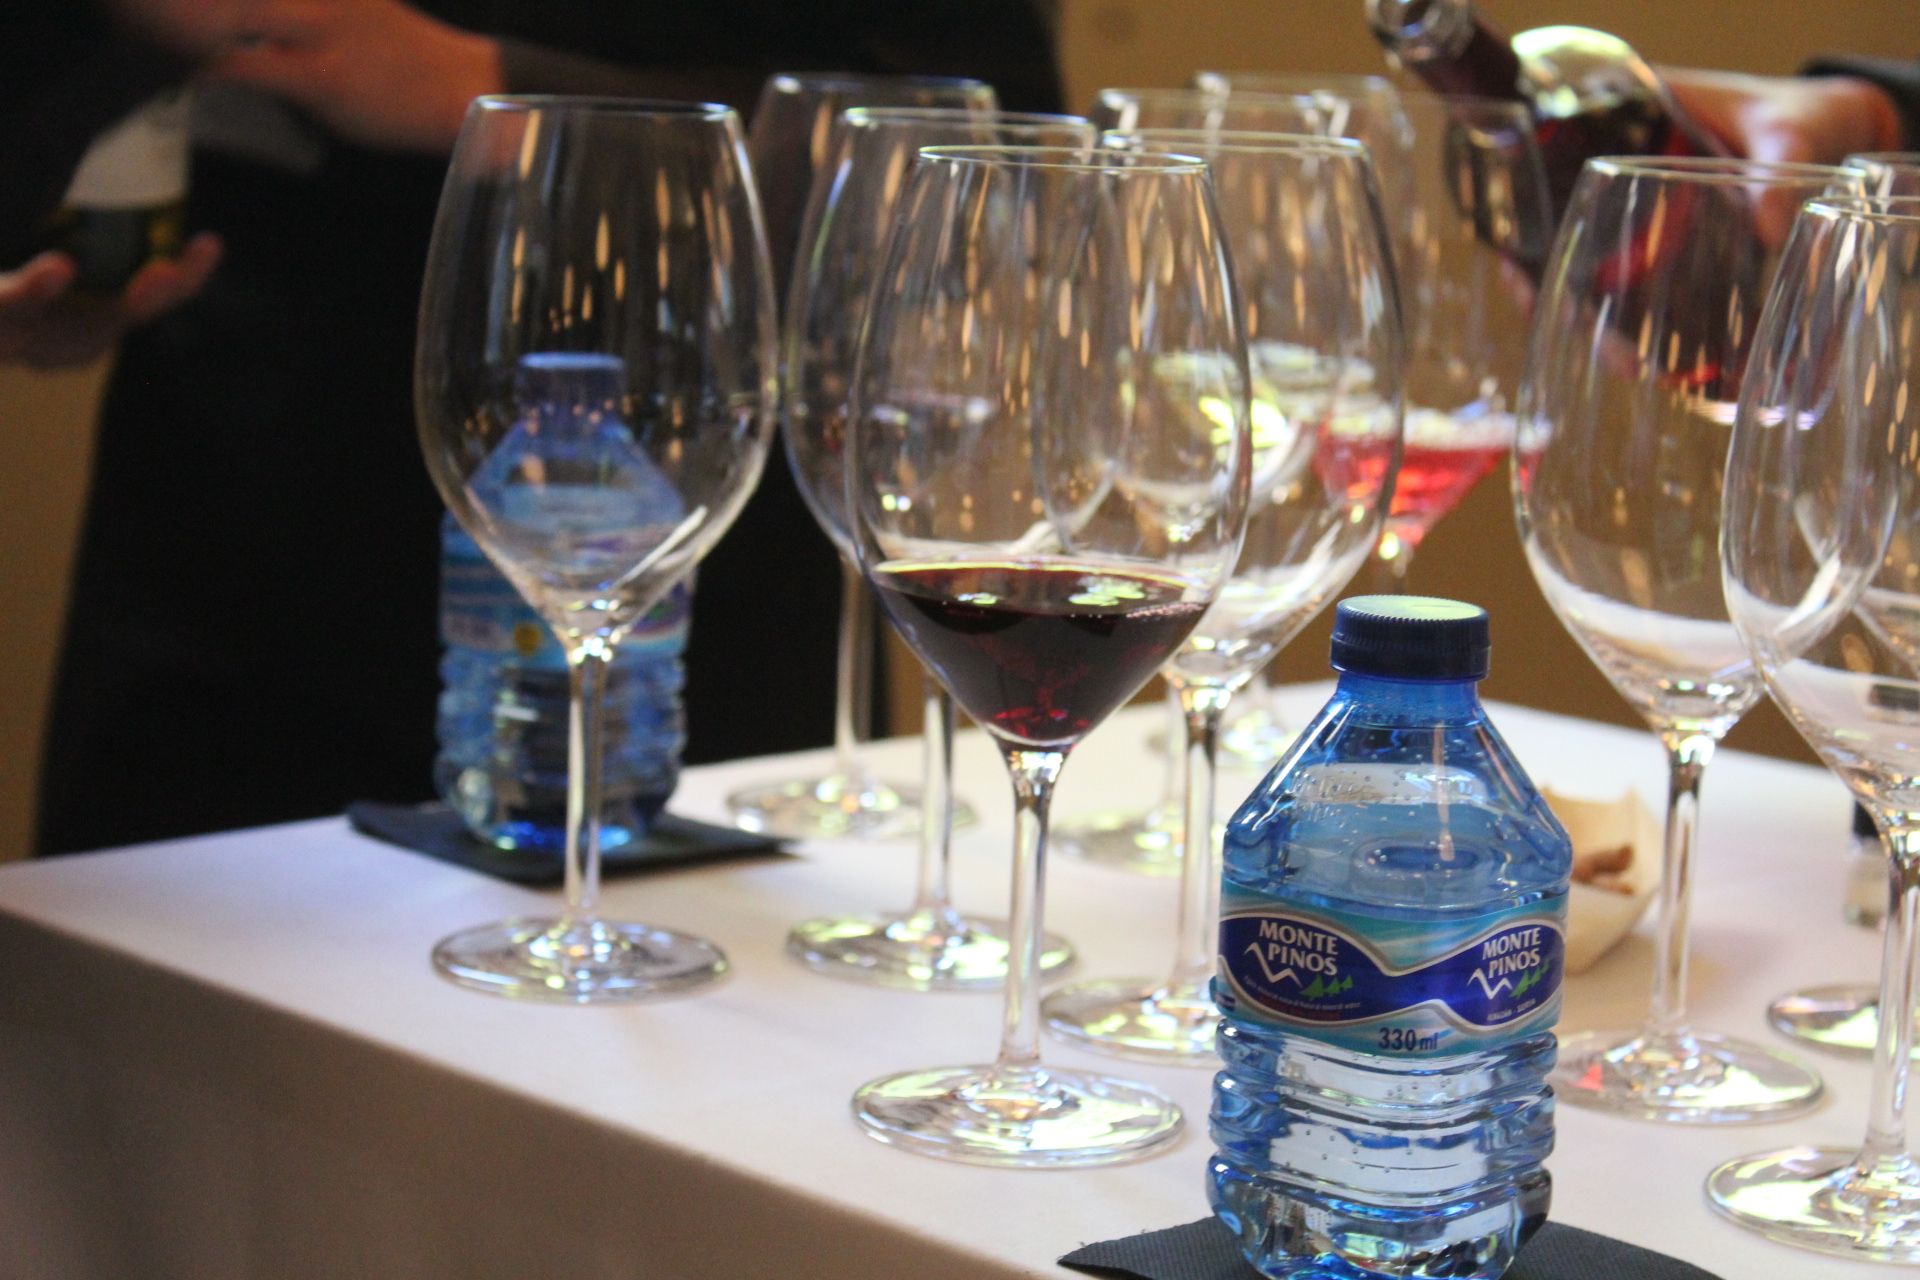  Segunda jornada del Congreso Duero Wine Fest. Fotos Carlos H.G